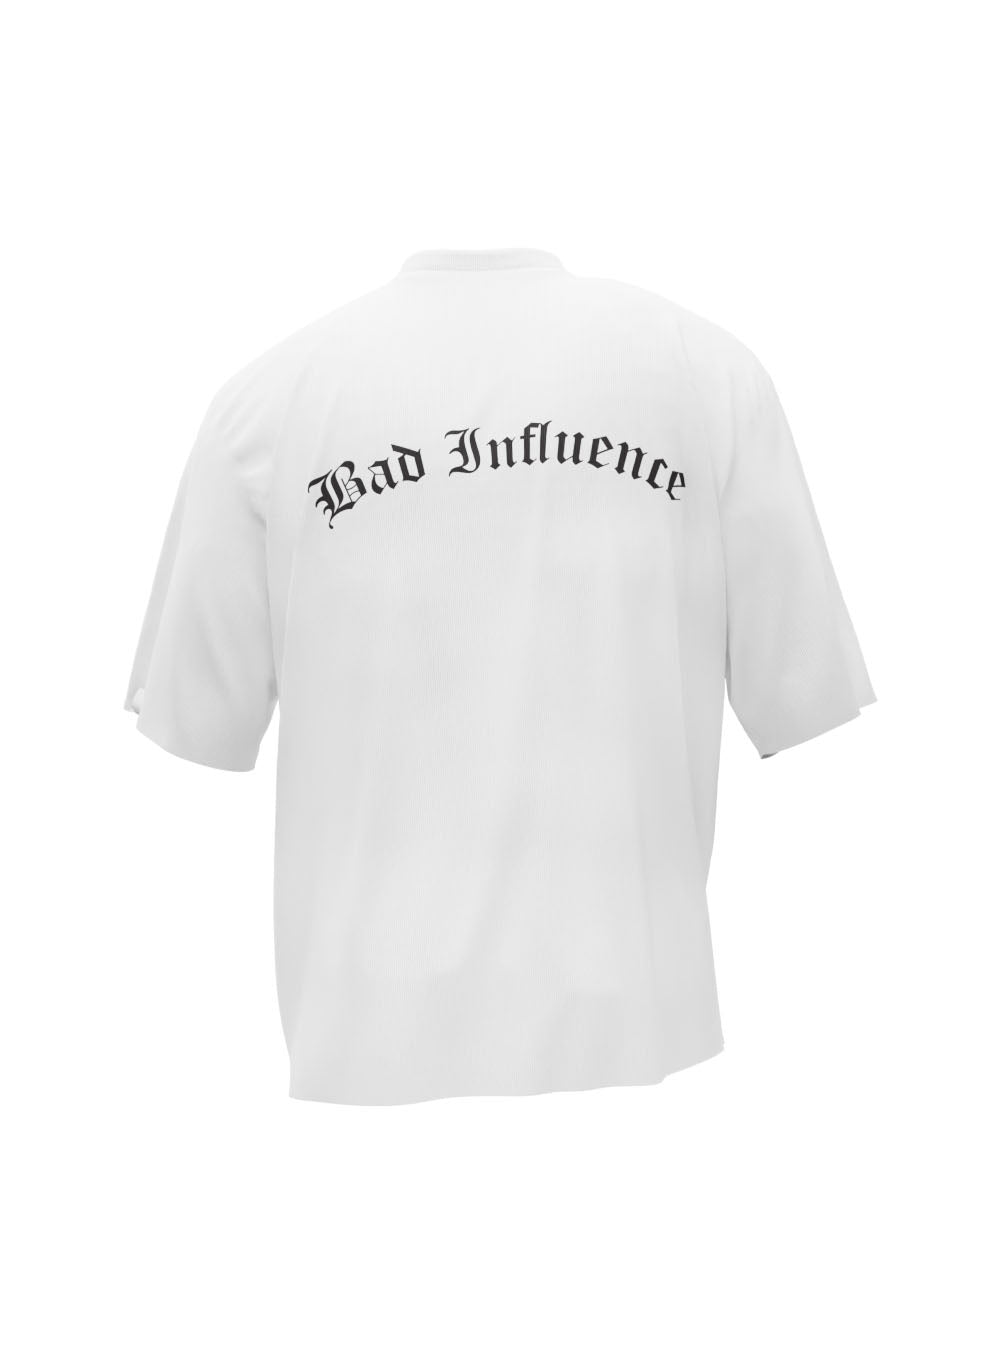 Bad Influence Oversized White T-Shirt